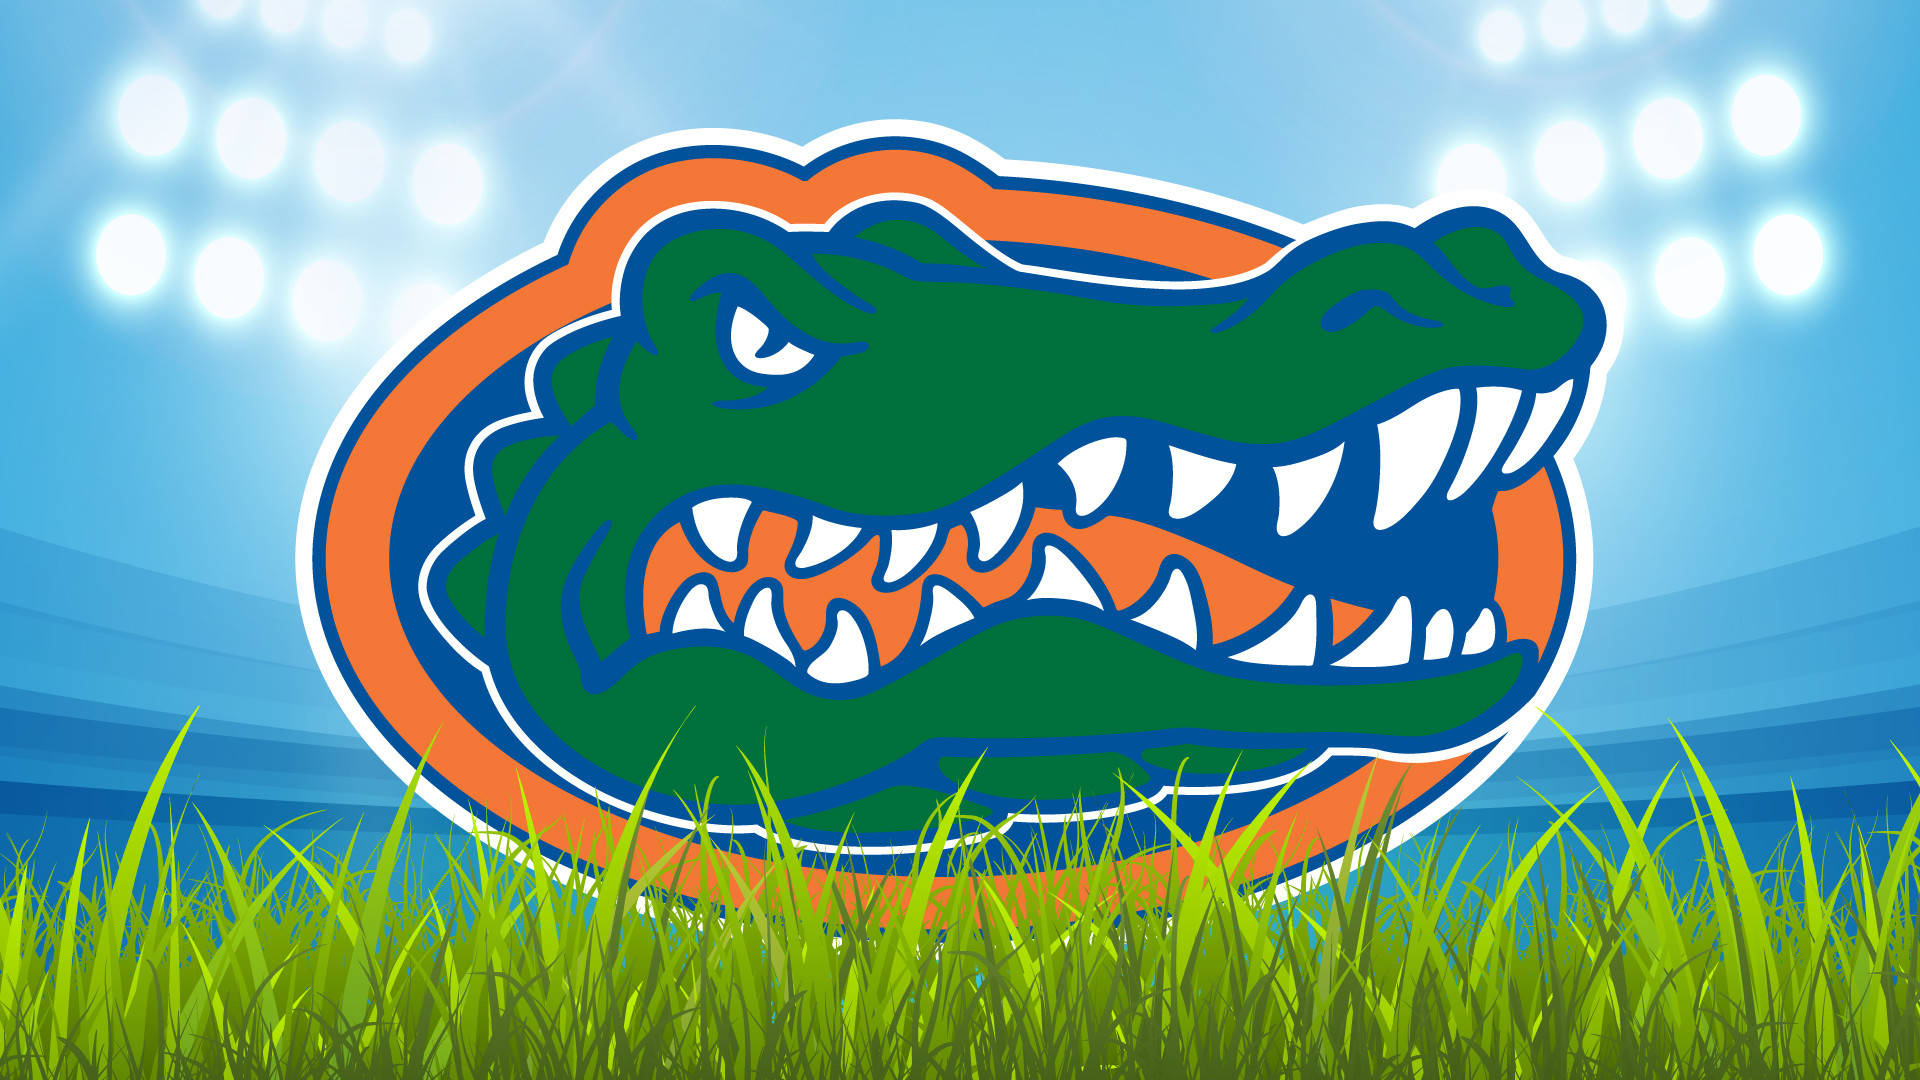 Logotipode Fútbol De Cabeza De Caimán De Los Florida Gators. Fondo de pantalla